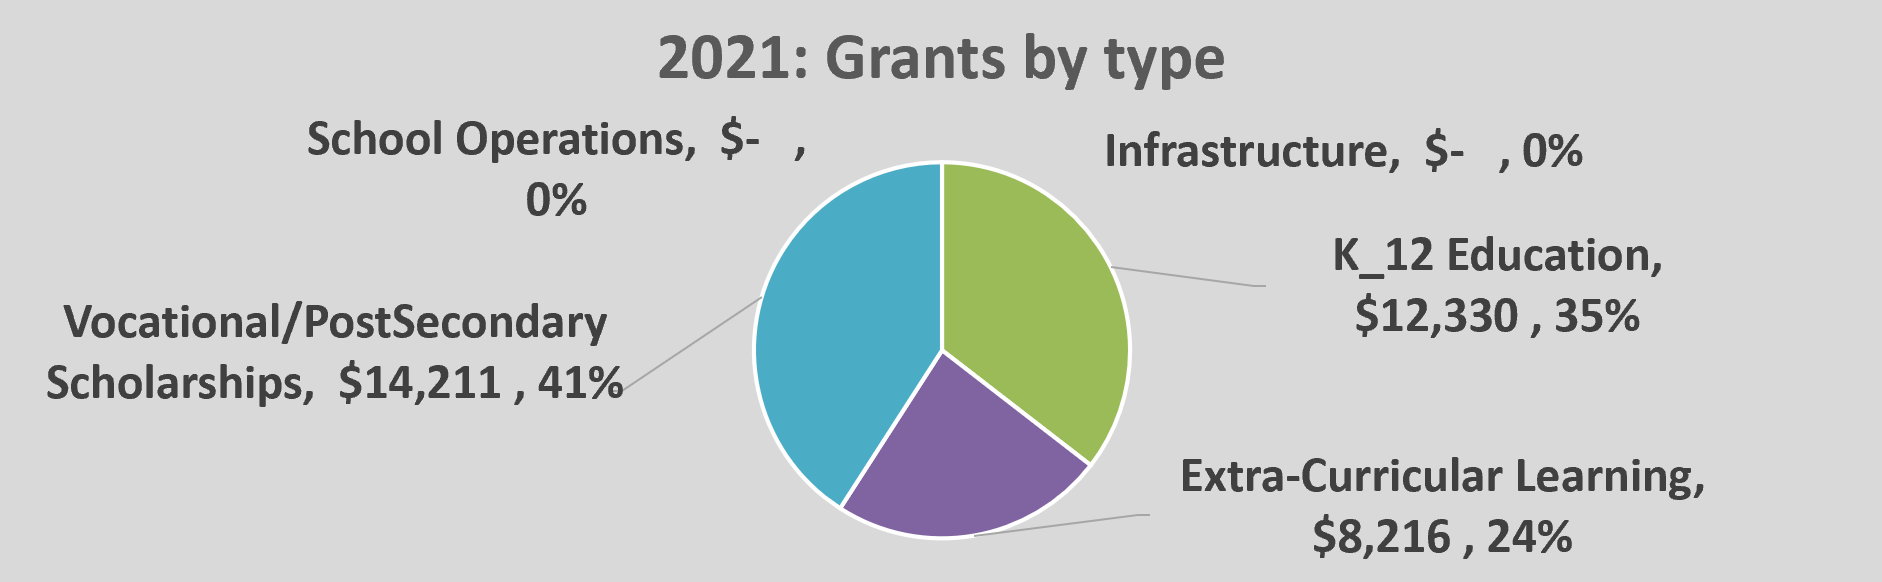 OPEN grants 2021